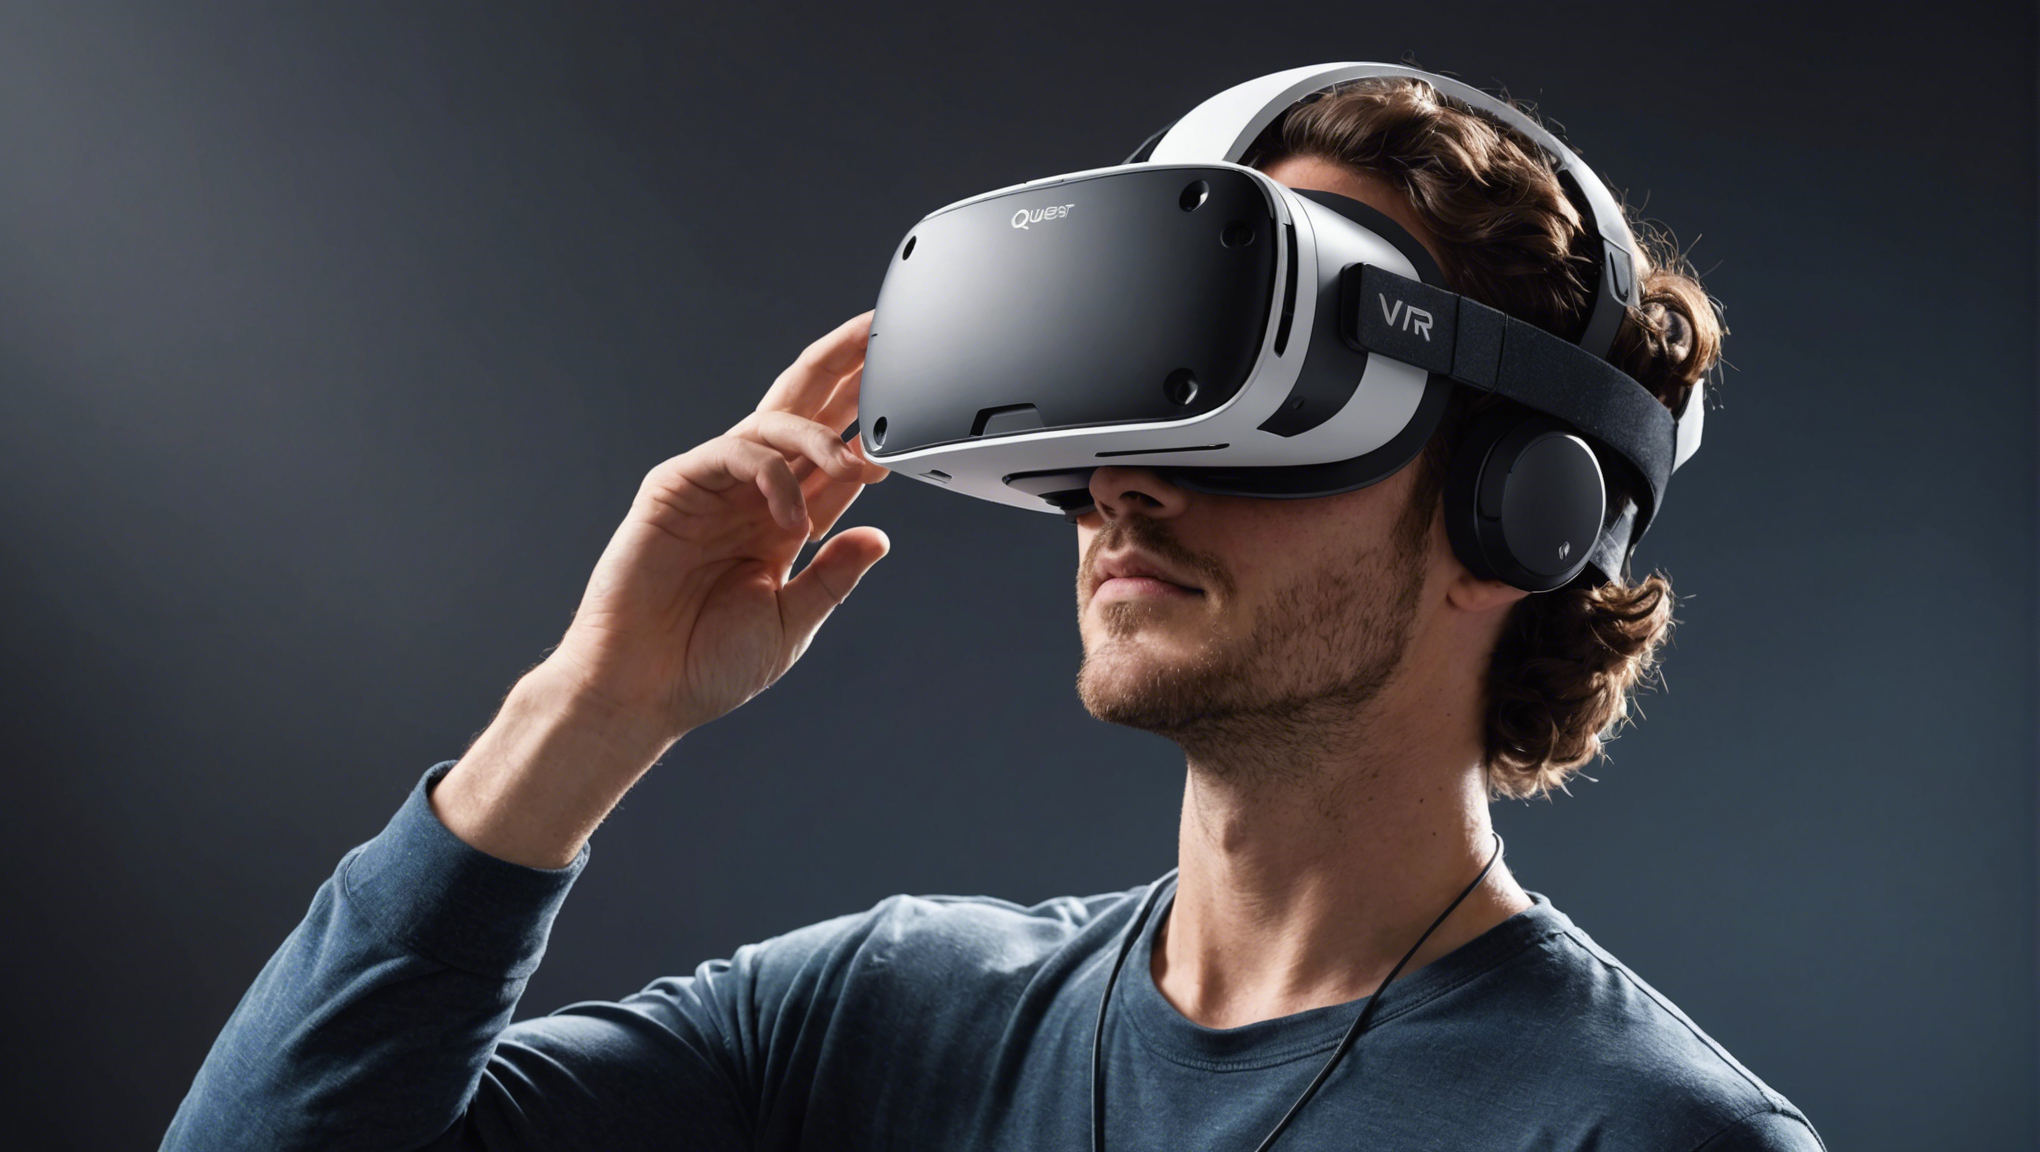 découvrez le casque vr meta quest 2 et plongez-vous dans la révolution de la réalité virtuelle. profitez d'une expérience immersive et innovante avec ce bijou de technologie. etes-vous prêt pour la prochaine étape du divertissement ?